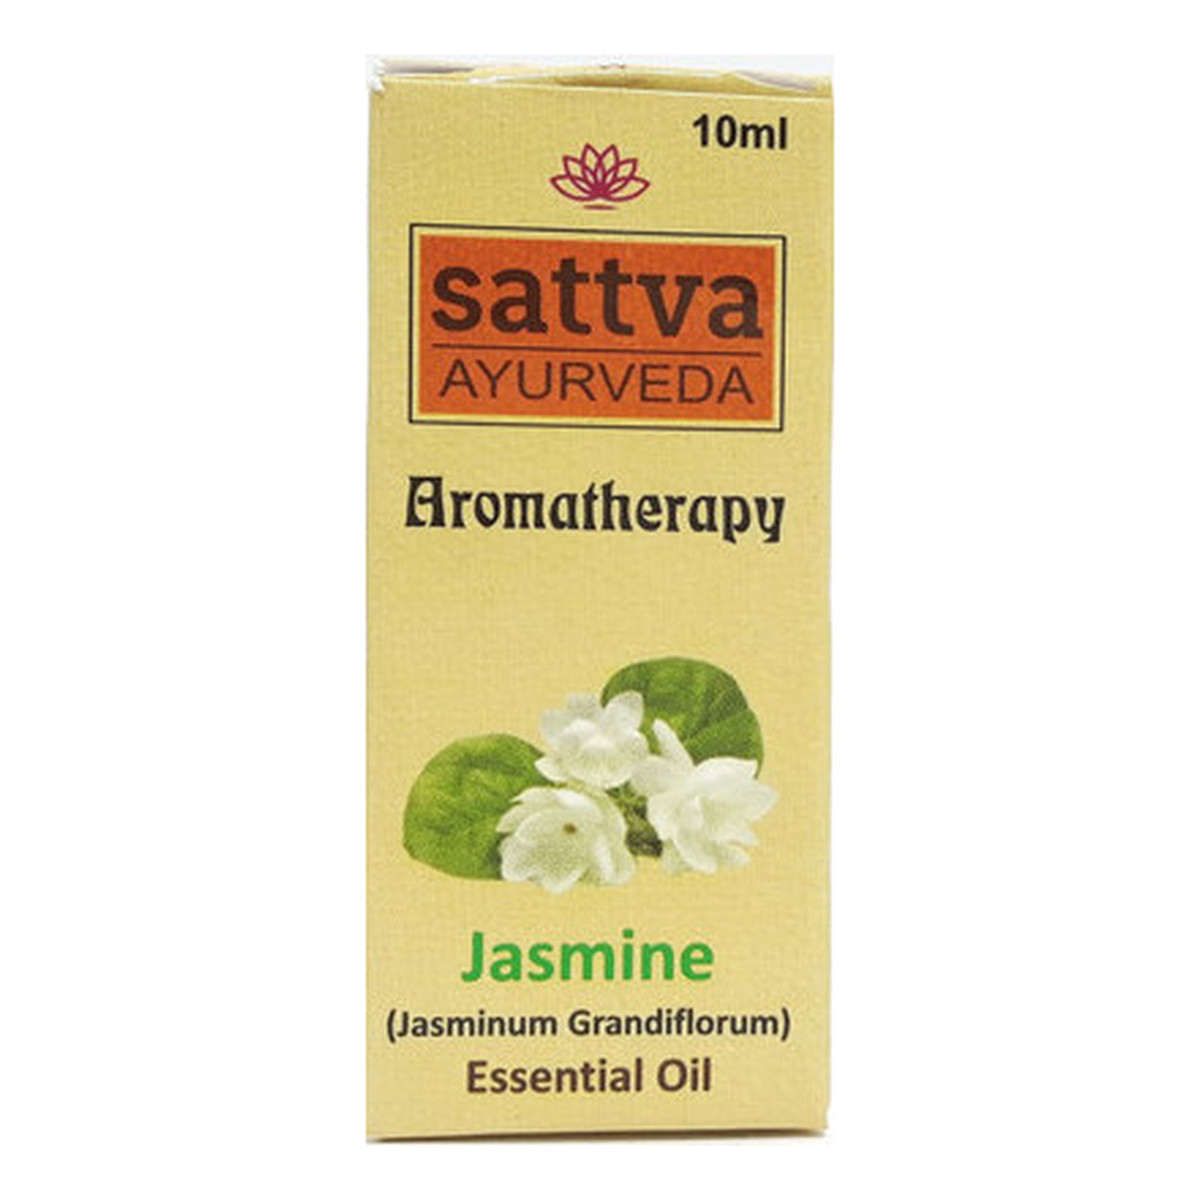 Sattva Aromatherapy Essential Oil Aromatherapy Olejek eteryczny jaśminowy 10ml